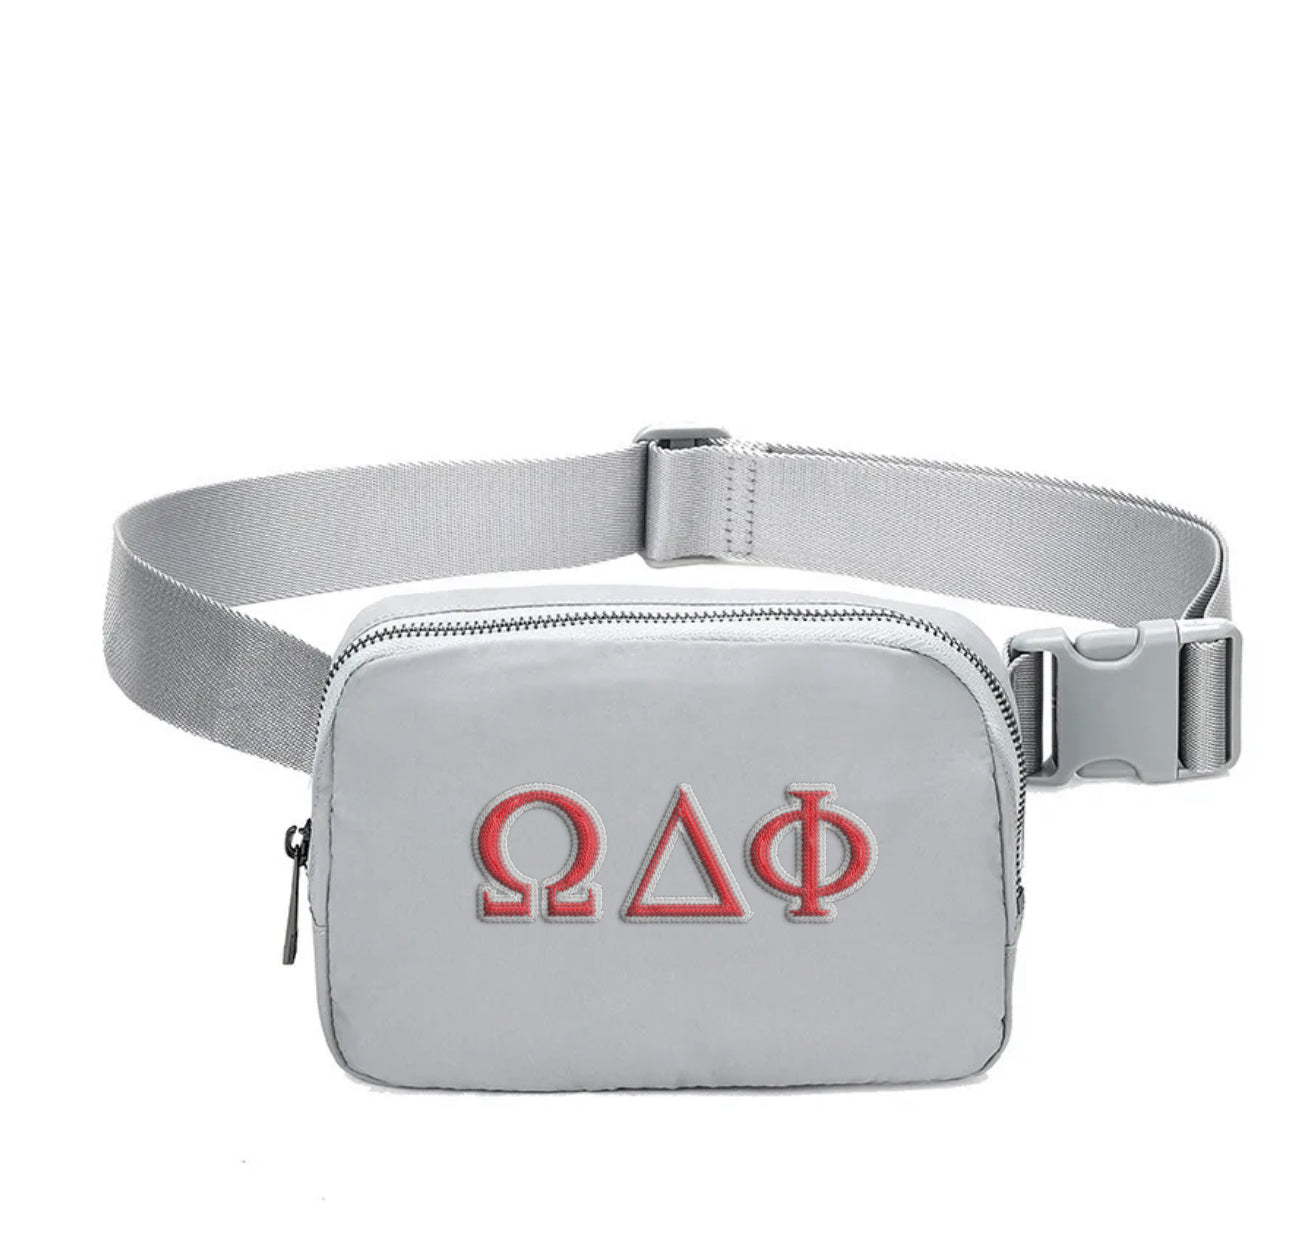 Omega Delta Phi Embroidered Belt Bag